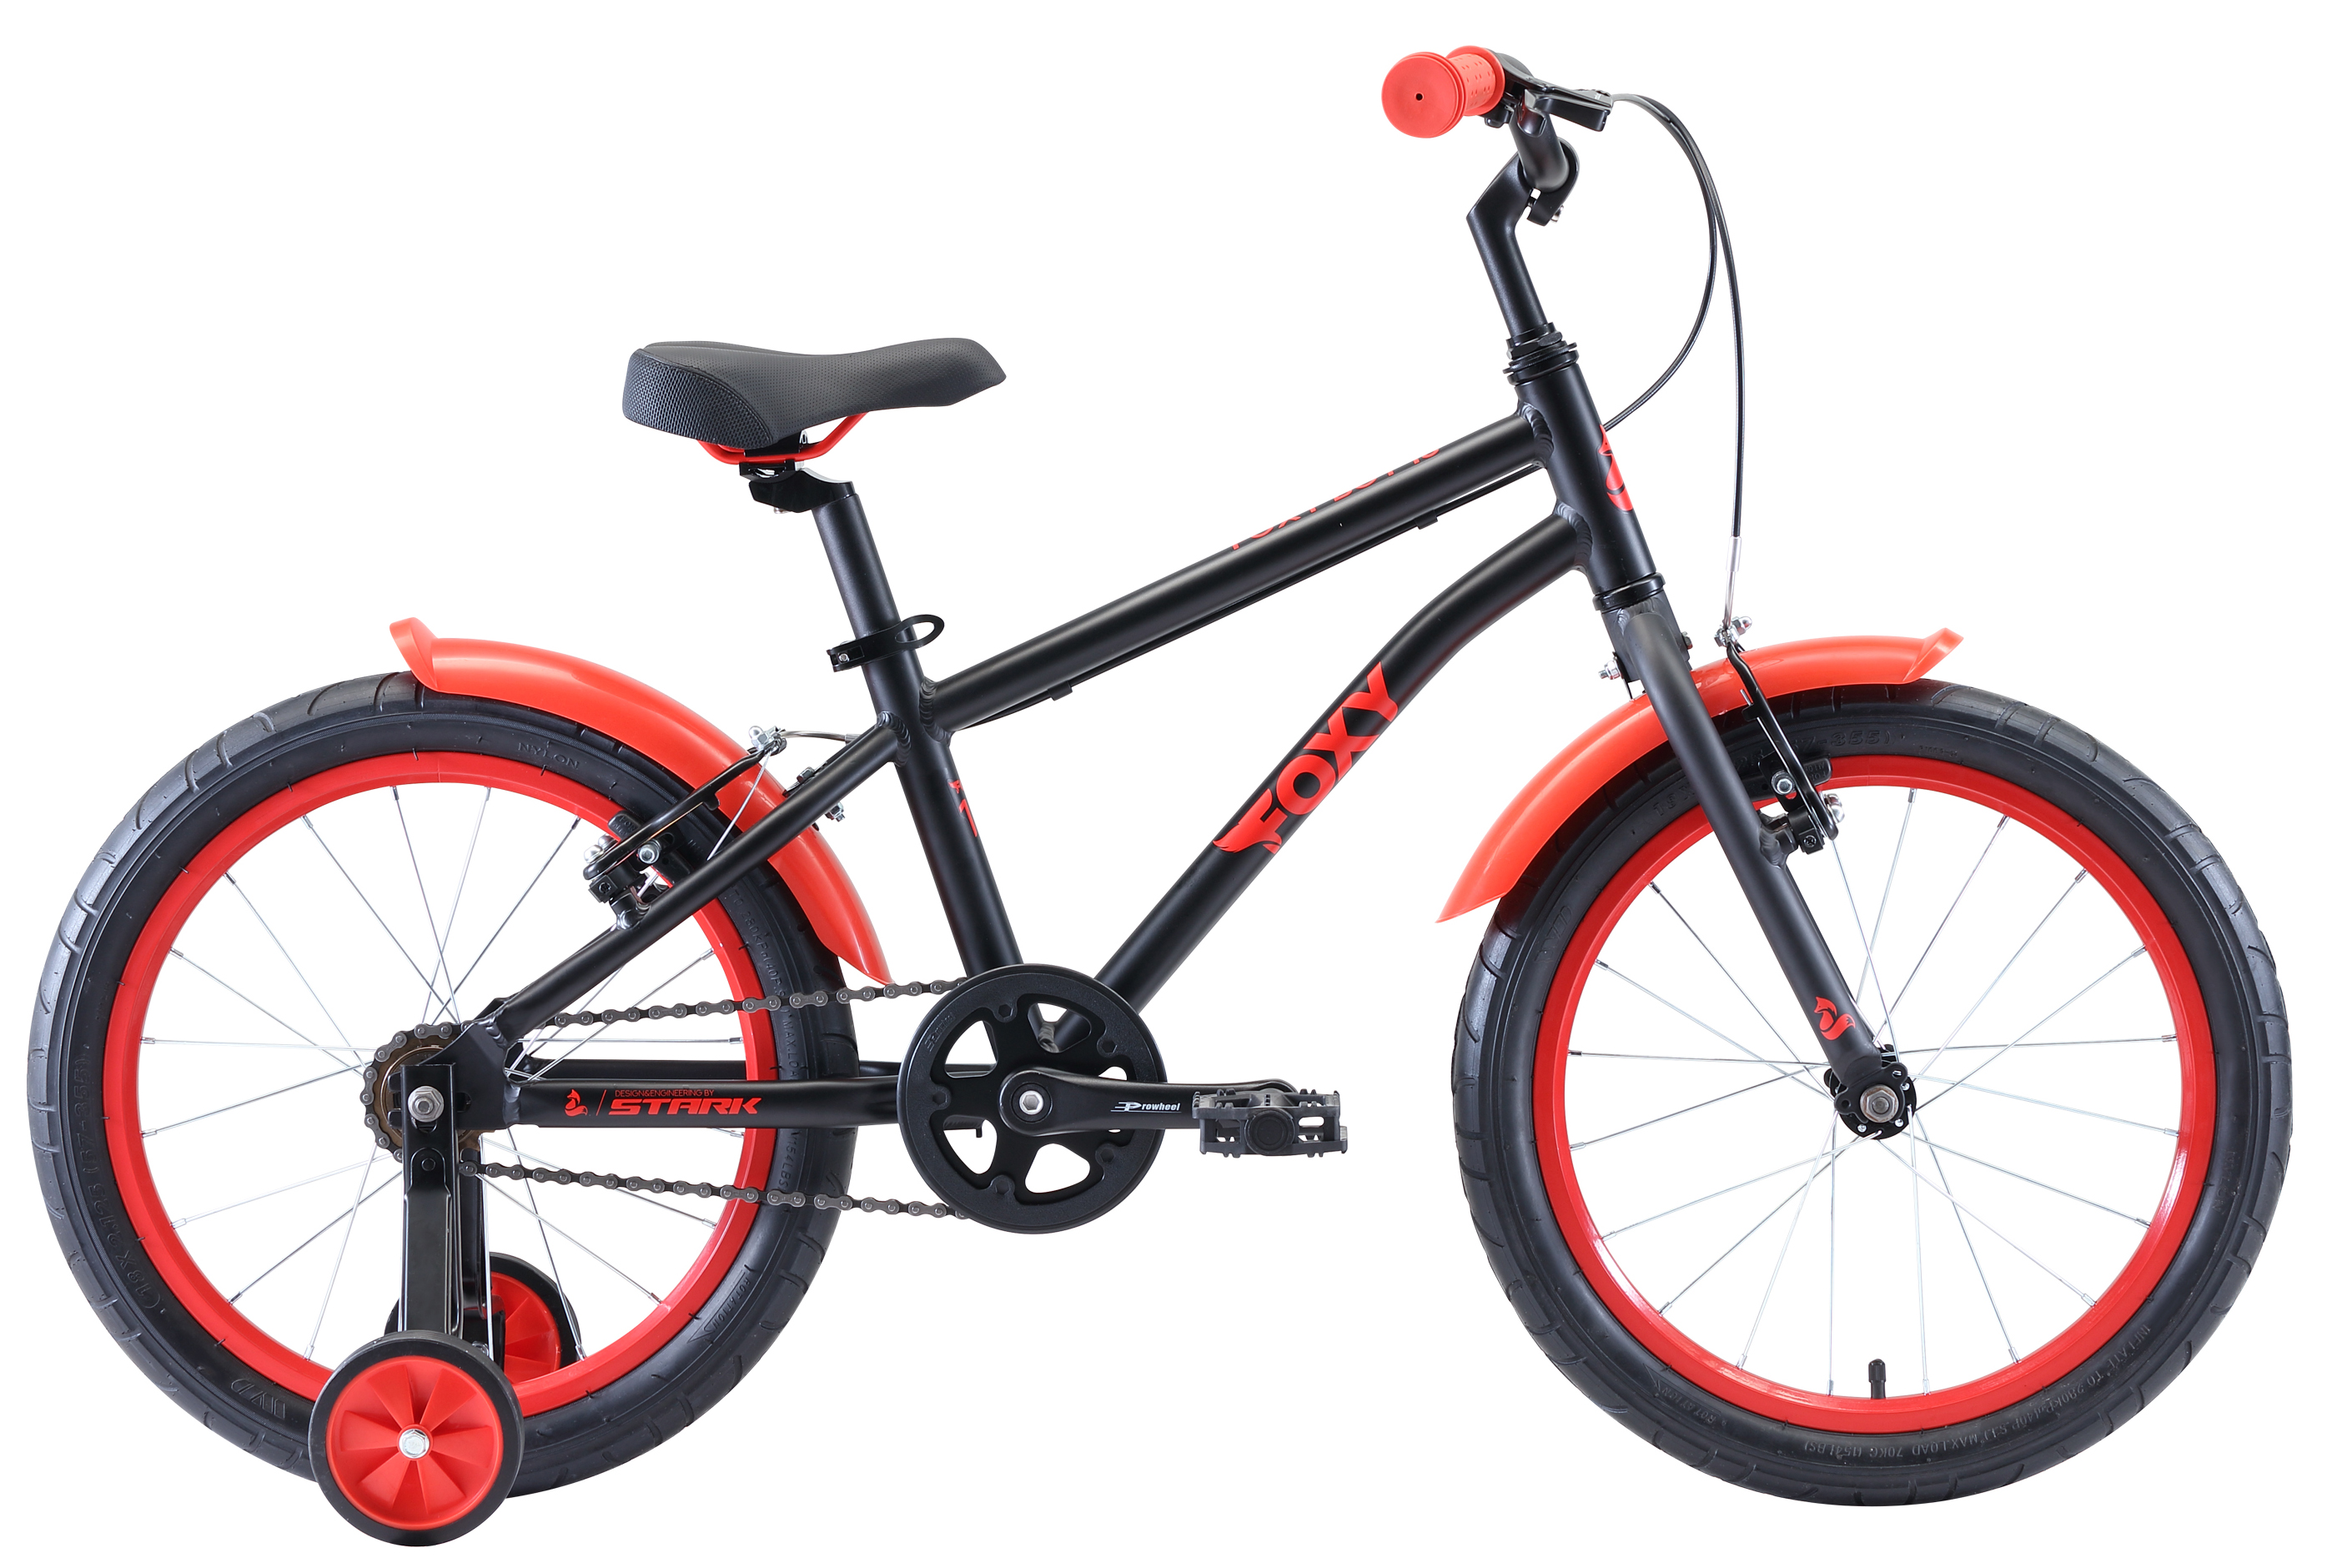  Отзывы о Детском велосипеде Stark Foxy 18 Boy 2020